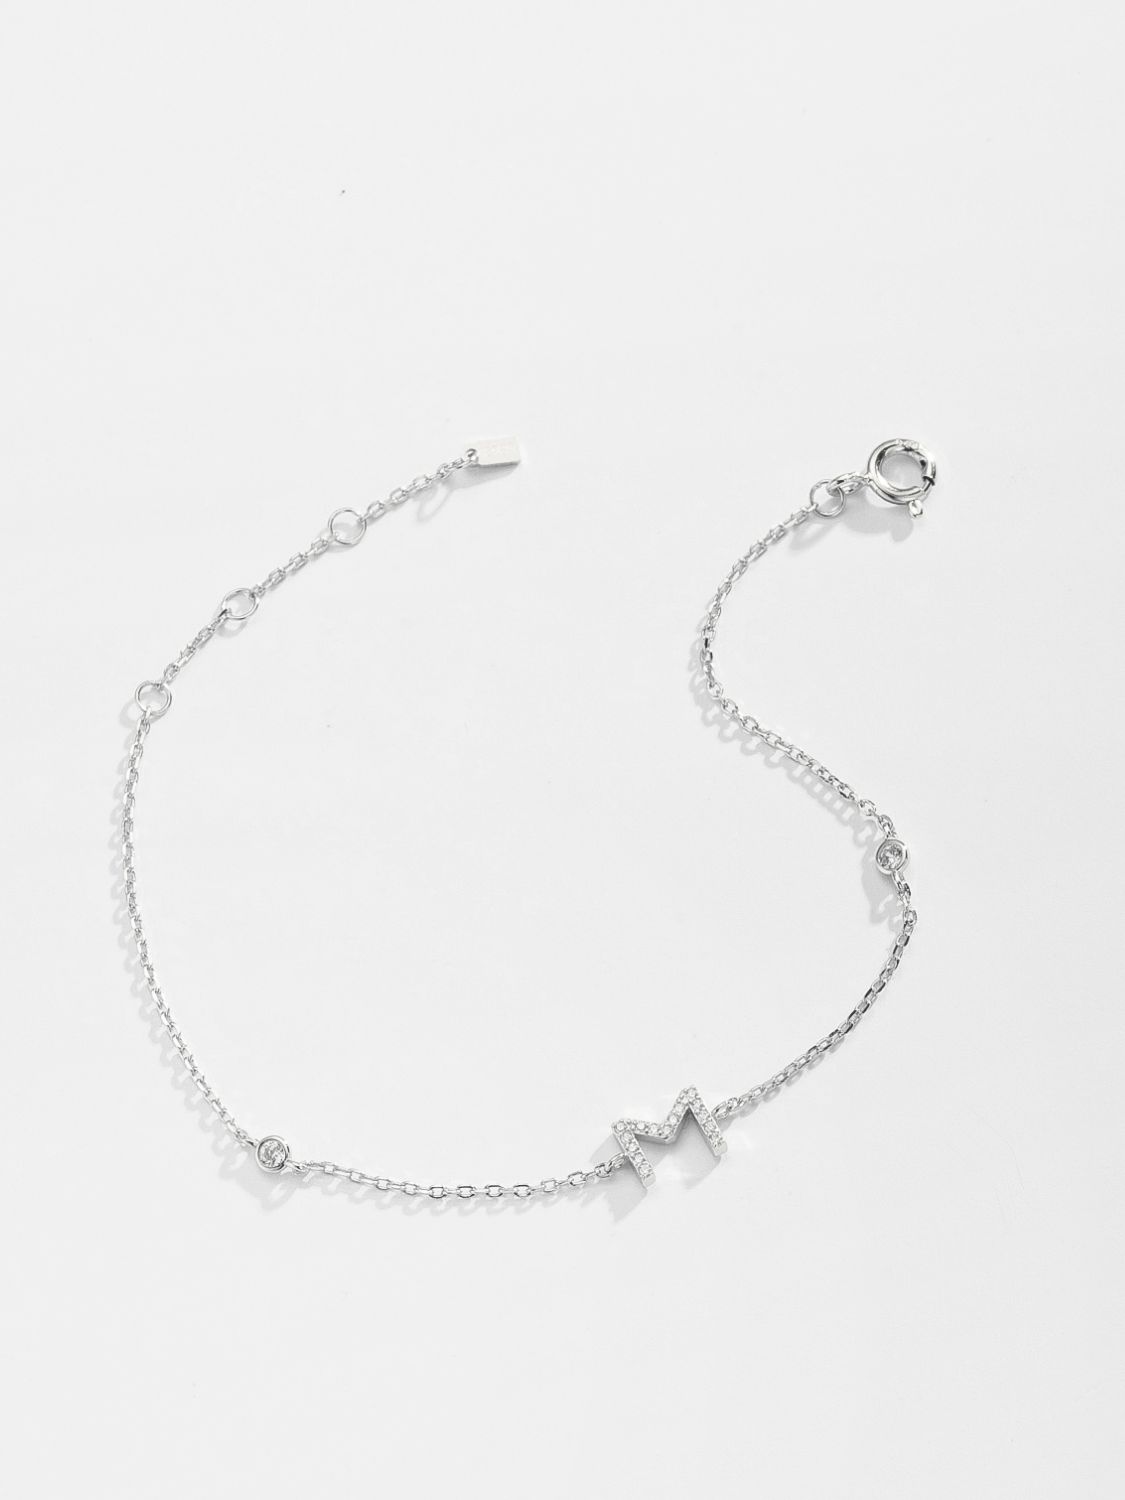 L To P Zircon 925 Sterling Silver Bracelet - Women’s Jewelry - Bracelets - 11 - 2024